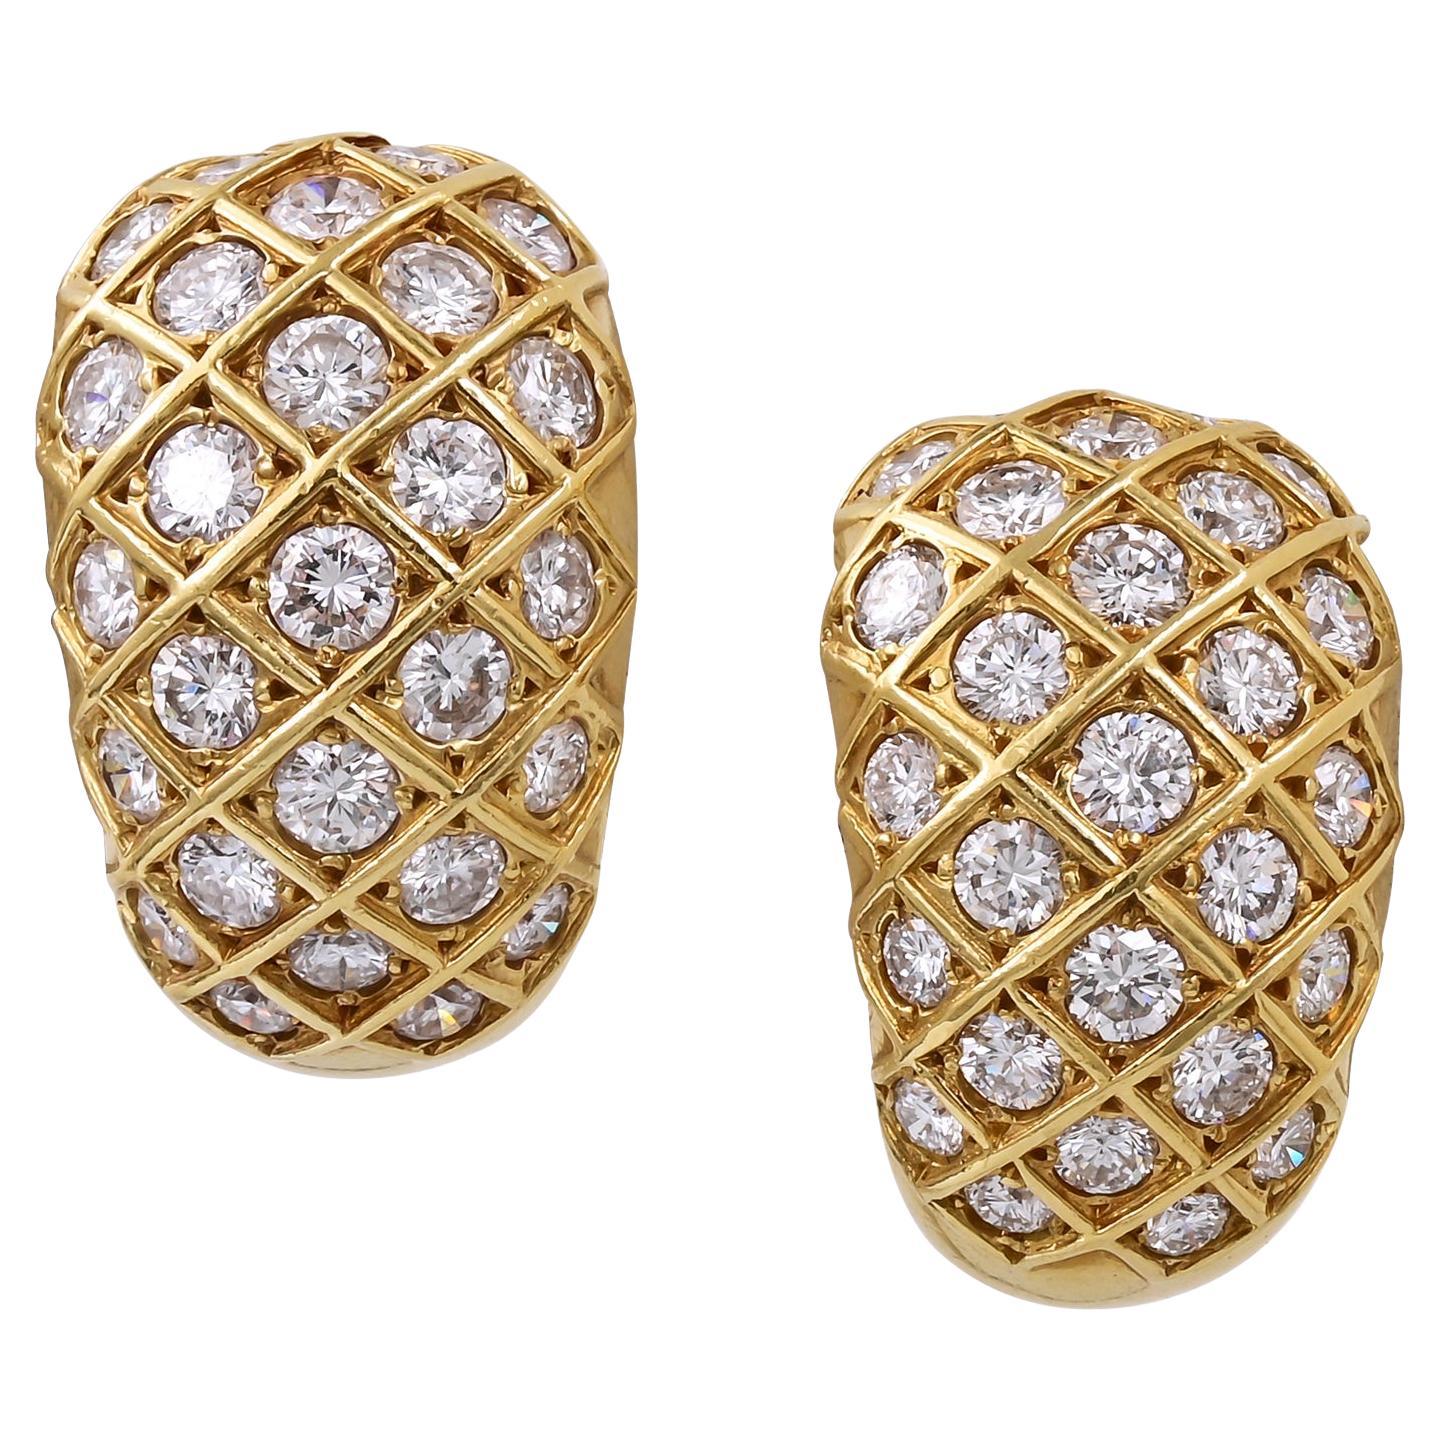 Van Cleef & Arpels Diamond 'Huggie' Earrings